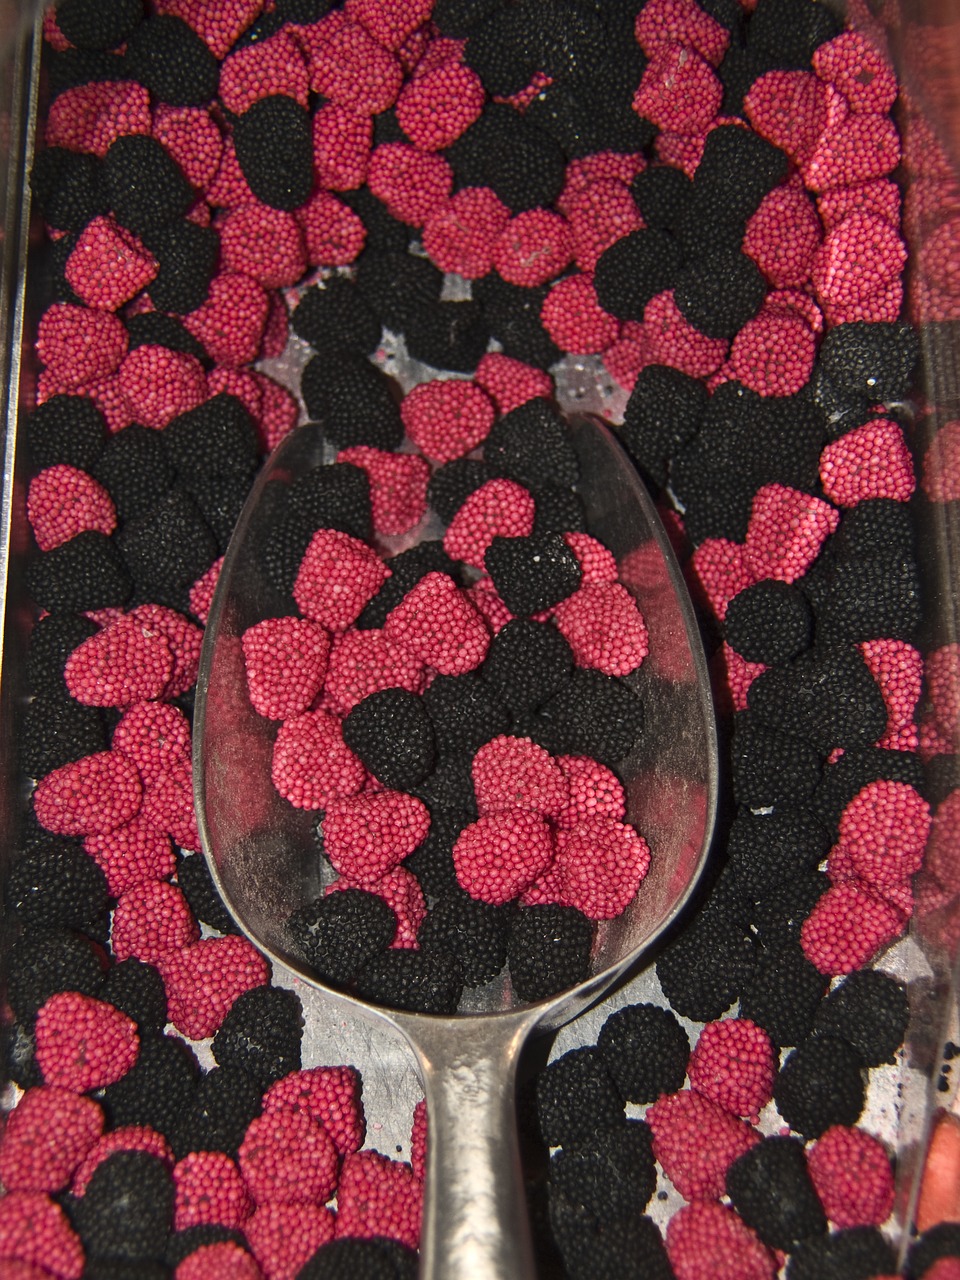 confectionery raspberries blackberries free photo